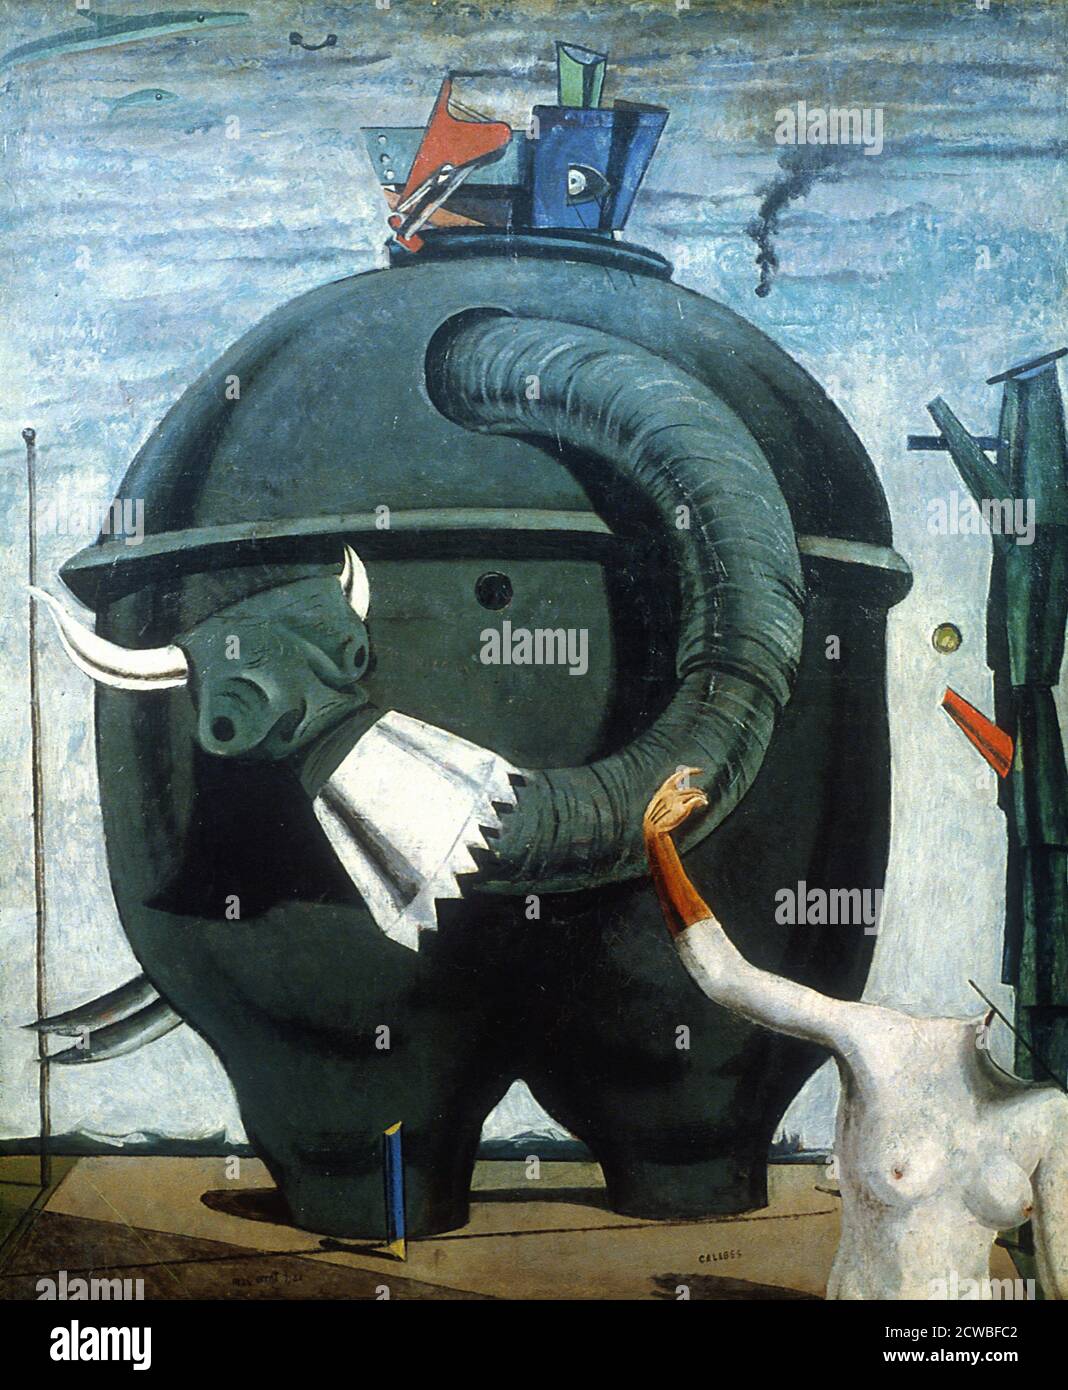 Die ElefantenCelebes (oder kurze Celebes) ist ein Gemälde des deutschen Dadaisten und Surrealisten Max Ernst aus dem Jahr 1921. Es gehört zu den berühmtesten von Ernst's frühen surrealistischen Werken und "zweifellos das erste Meisterwerk der surrealistischen Malerei in der de Chirico Tradition Stockfoto